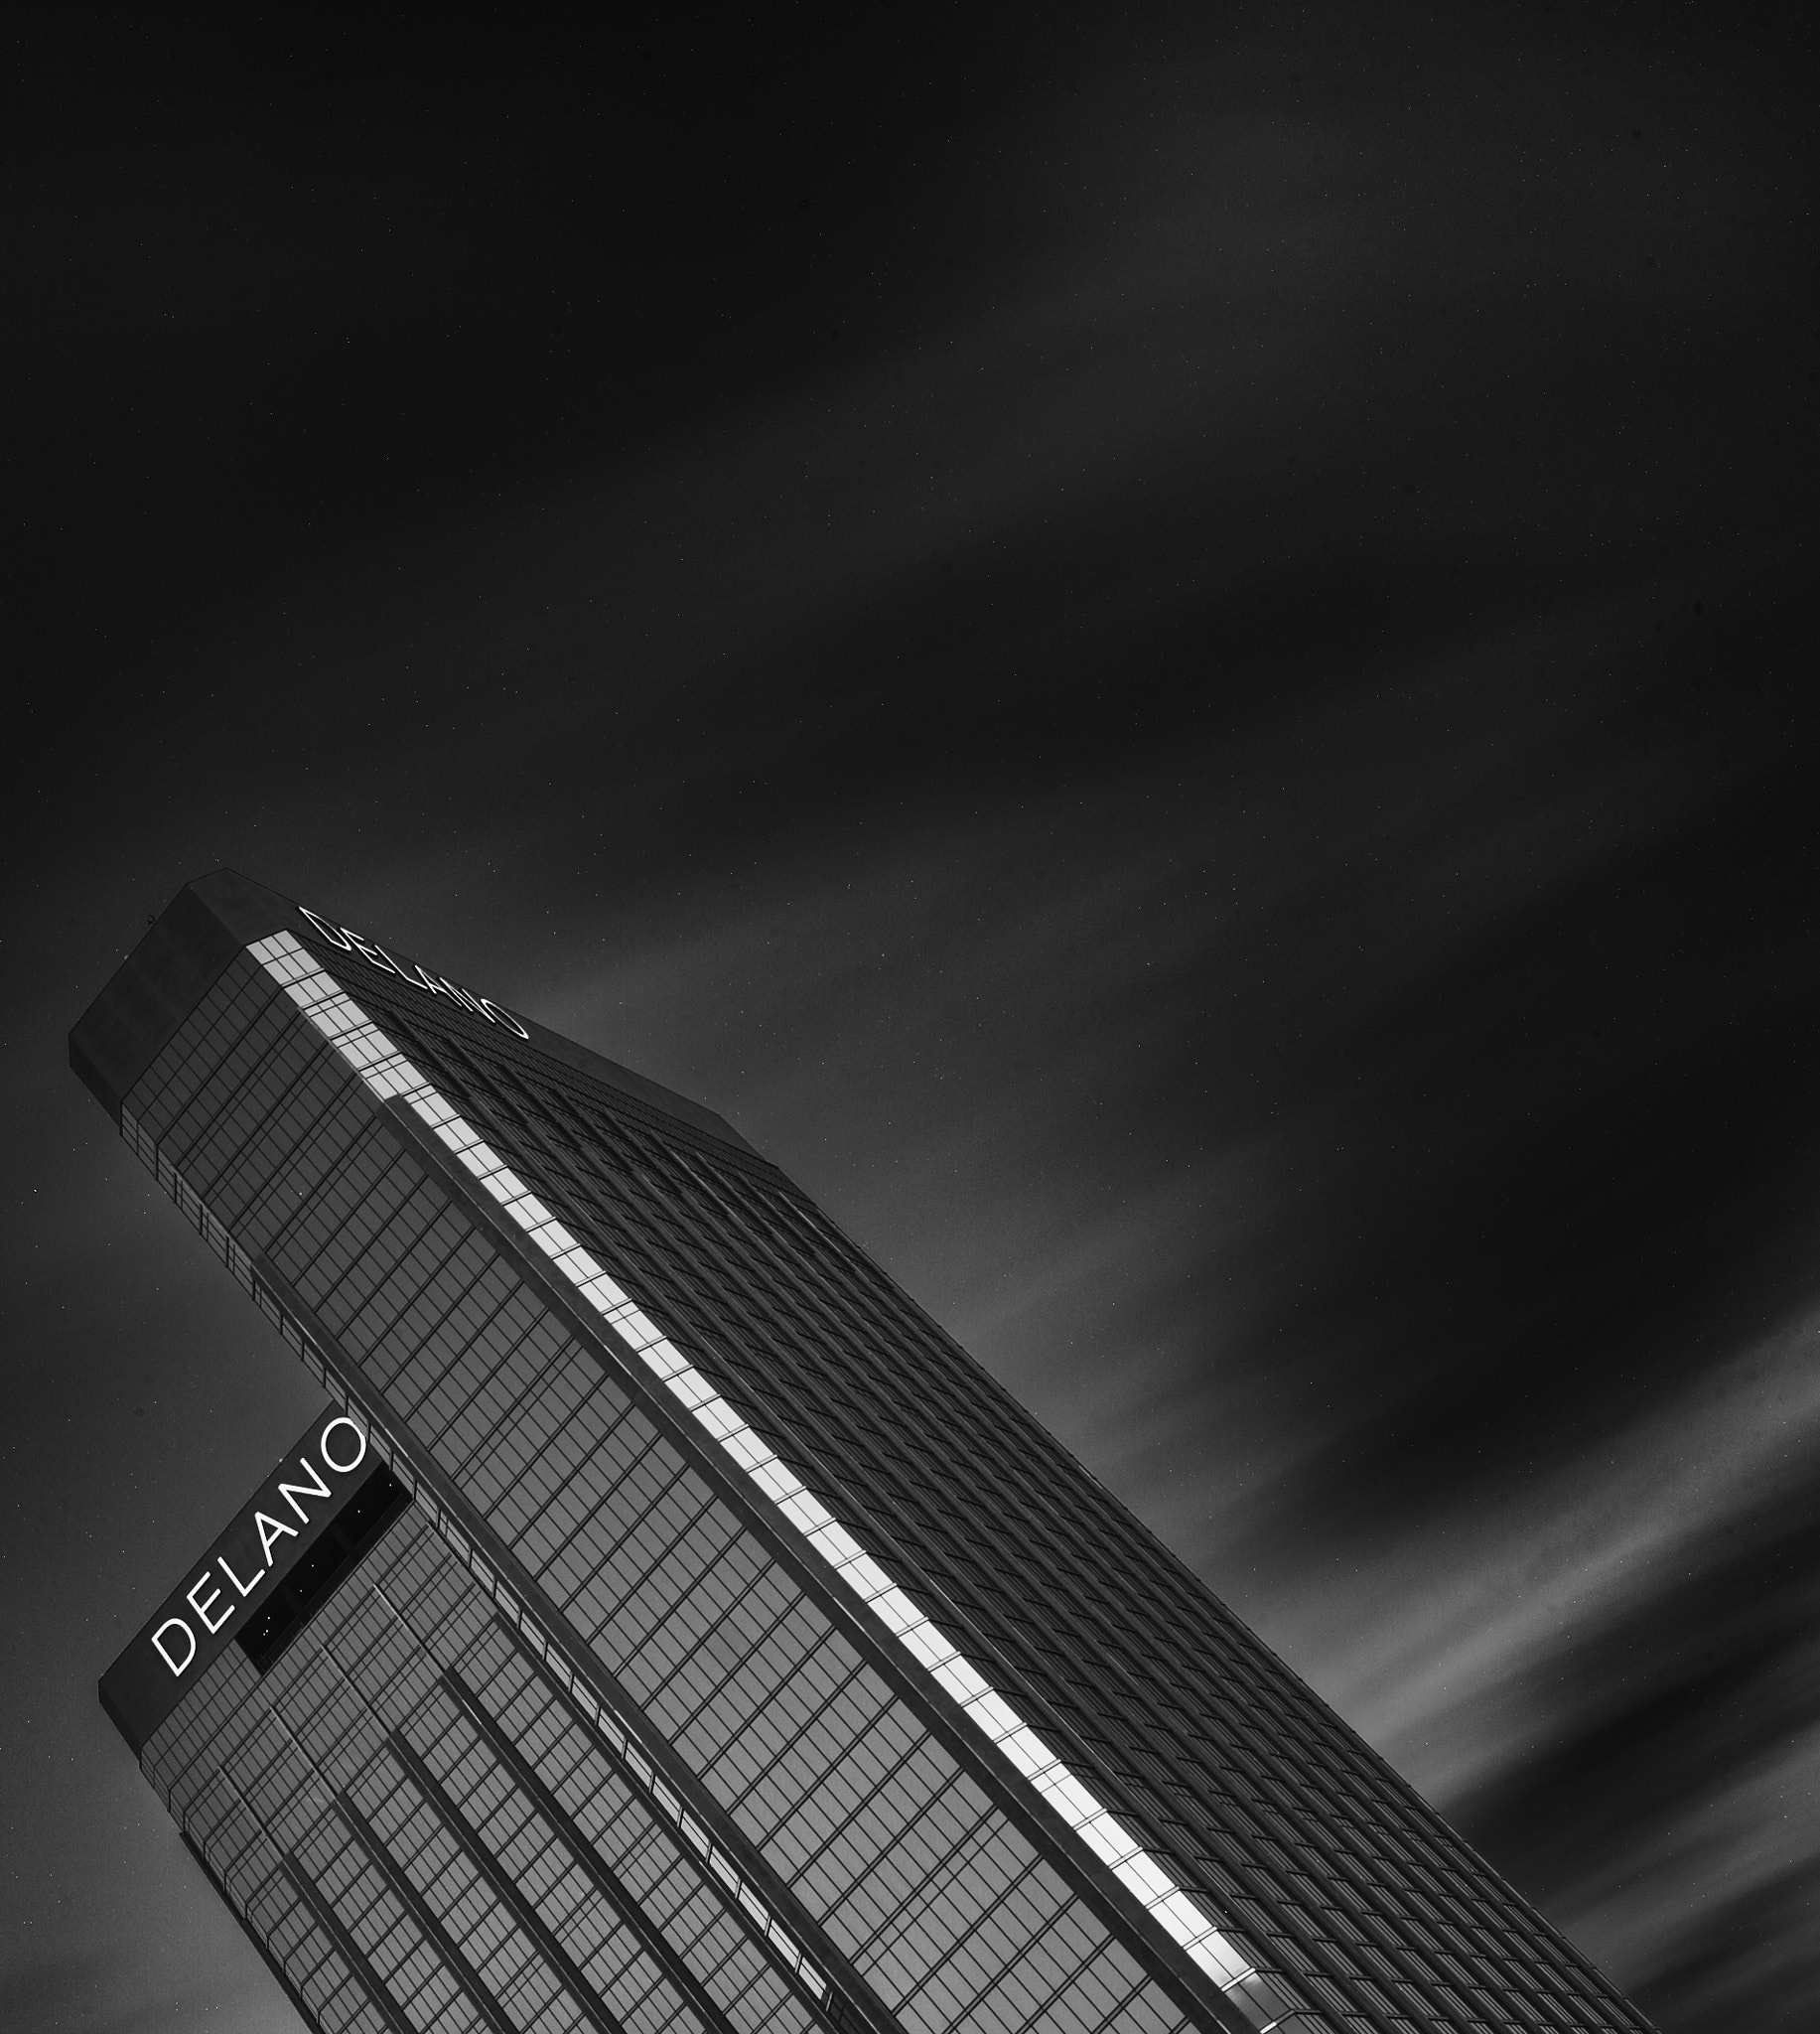 AF-S Nikkor 35mm f/1.8G sample photo. A buildings soul photography